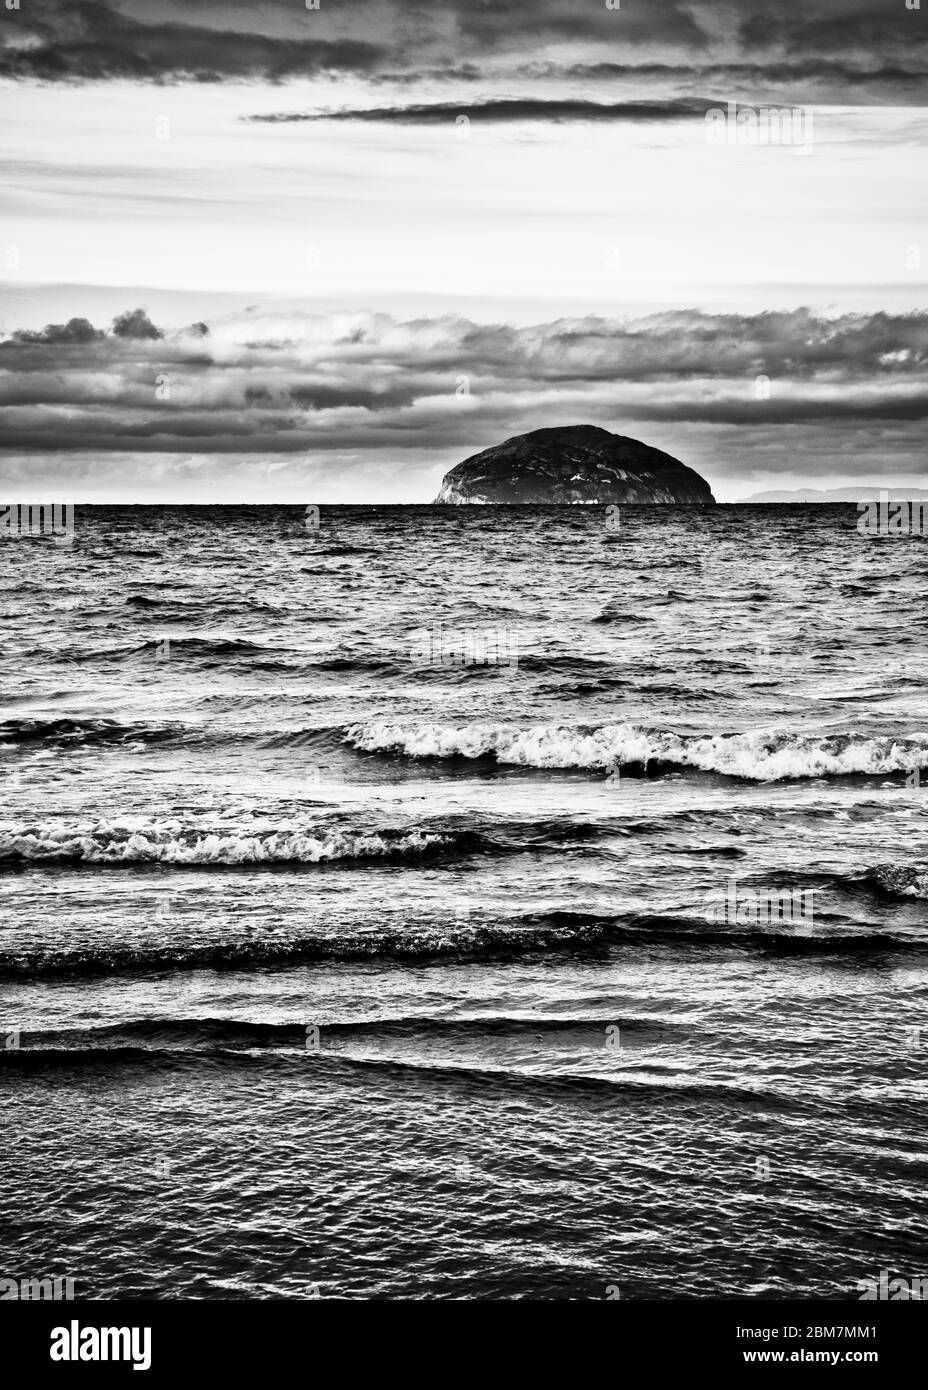 Image en noir et blanc comme la marée tourne doucement les vagues se brisant, à l'horizon Ailsa Craig, nuages sombres spectaculaires, île écossaise, Écosse. Banque D'Images